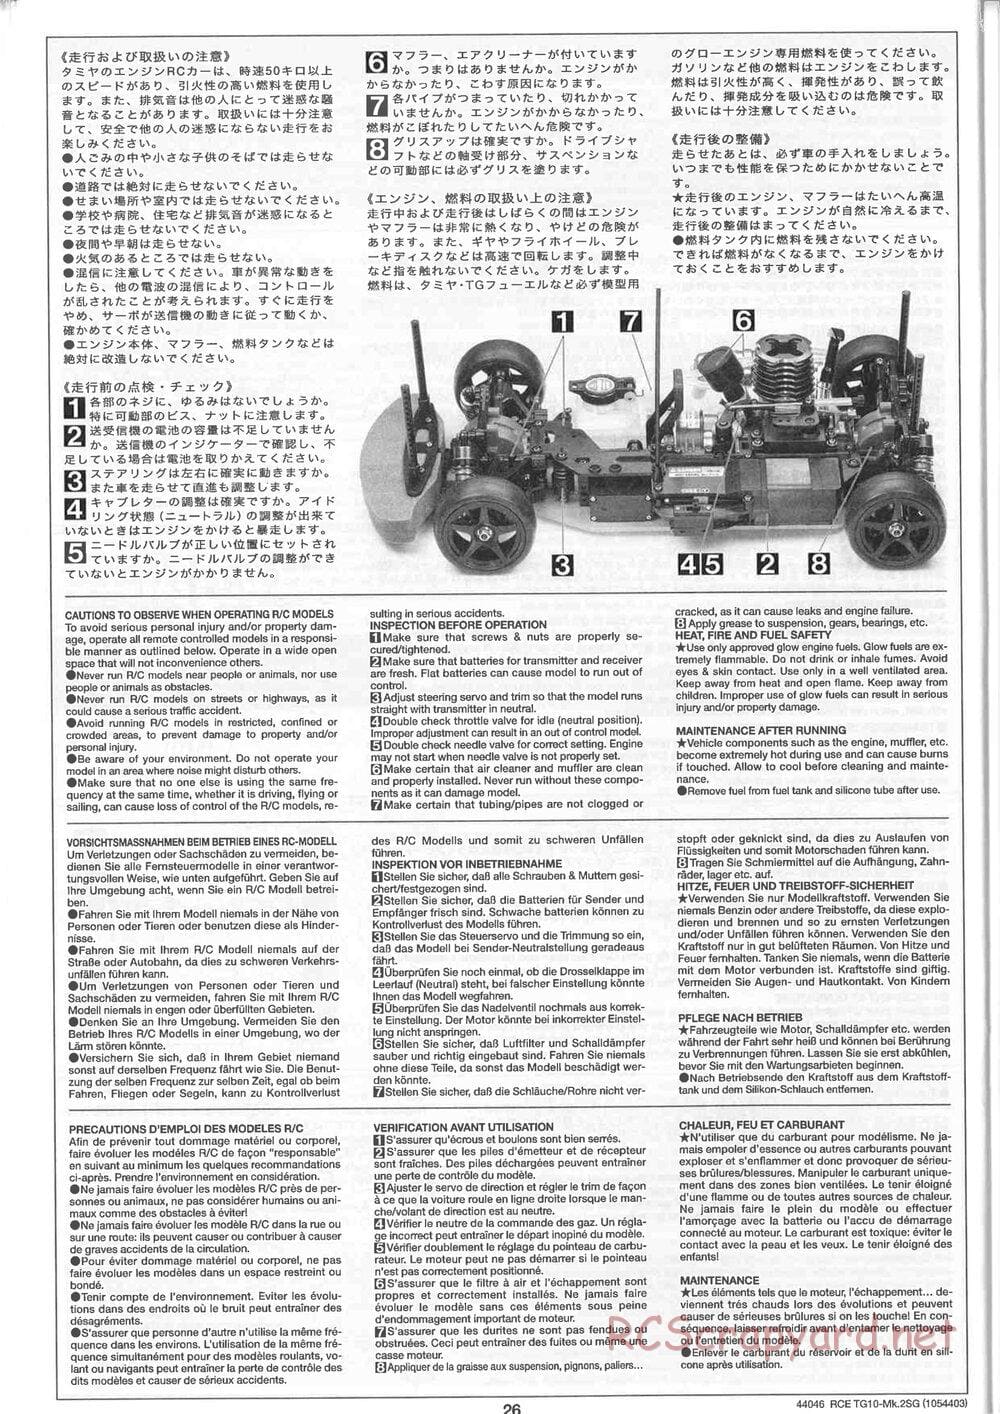 Tamiya - TG10 Mk.2SG Chassis - Manual - Page 26